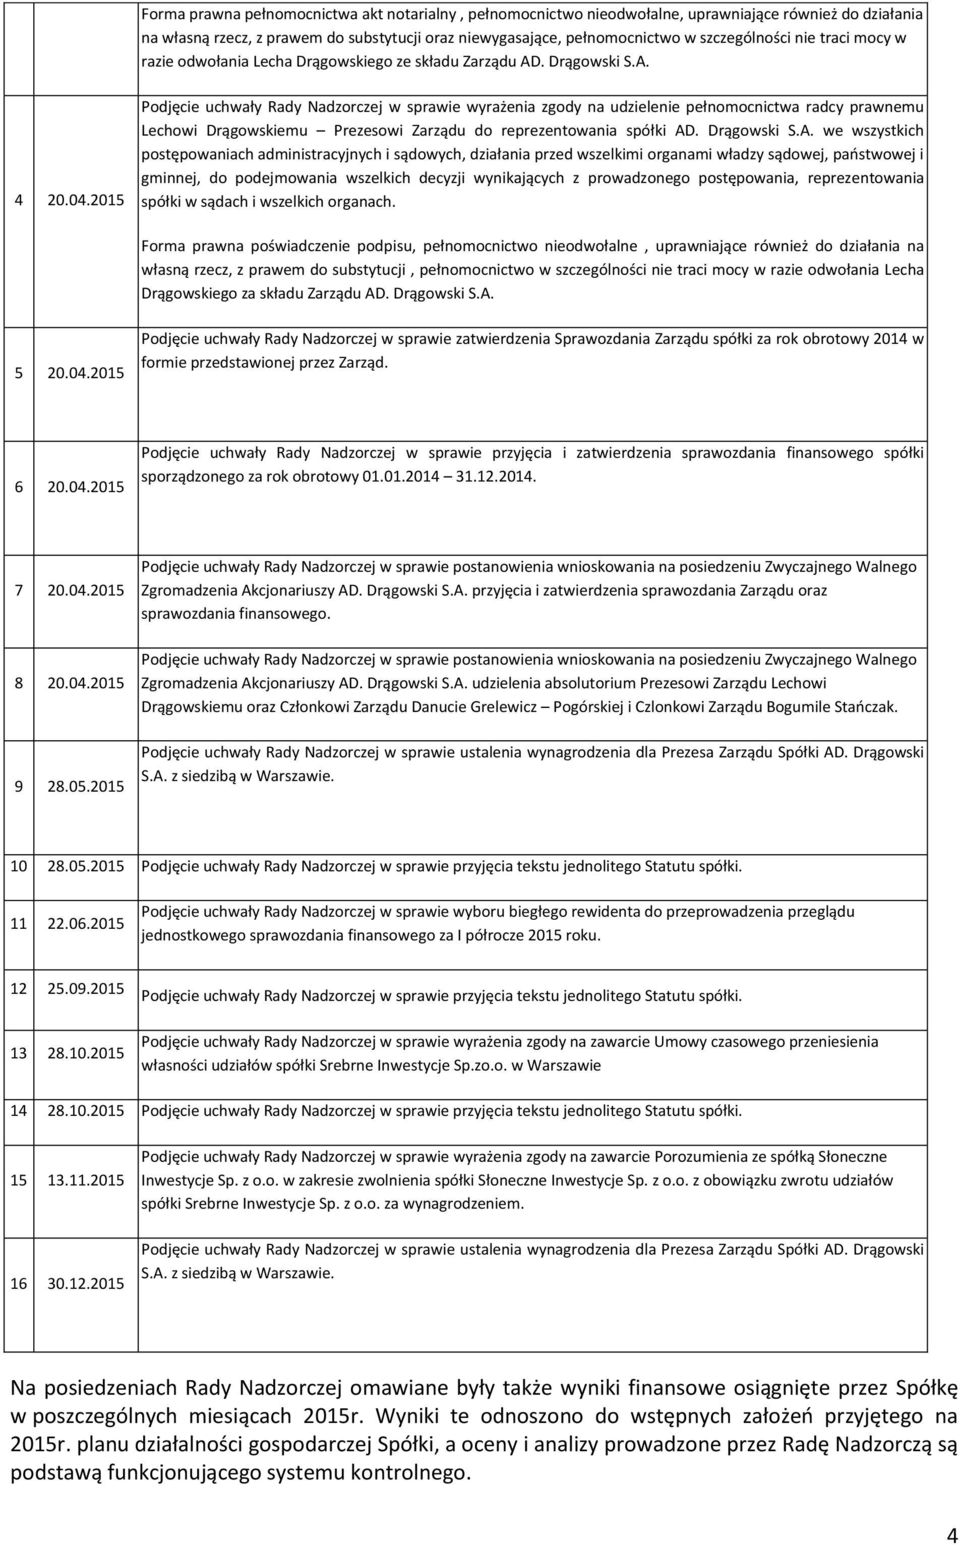 2015 Podjęcie uchwały Rady Nadzorczej w sprawie wyrażenia zgody na udzielenie pełnomocnictwa radcy prawnemu Lechowi Drągowskiemu Prezesowi Zarządu do reprezentowania spółki AD